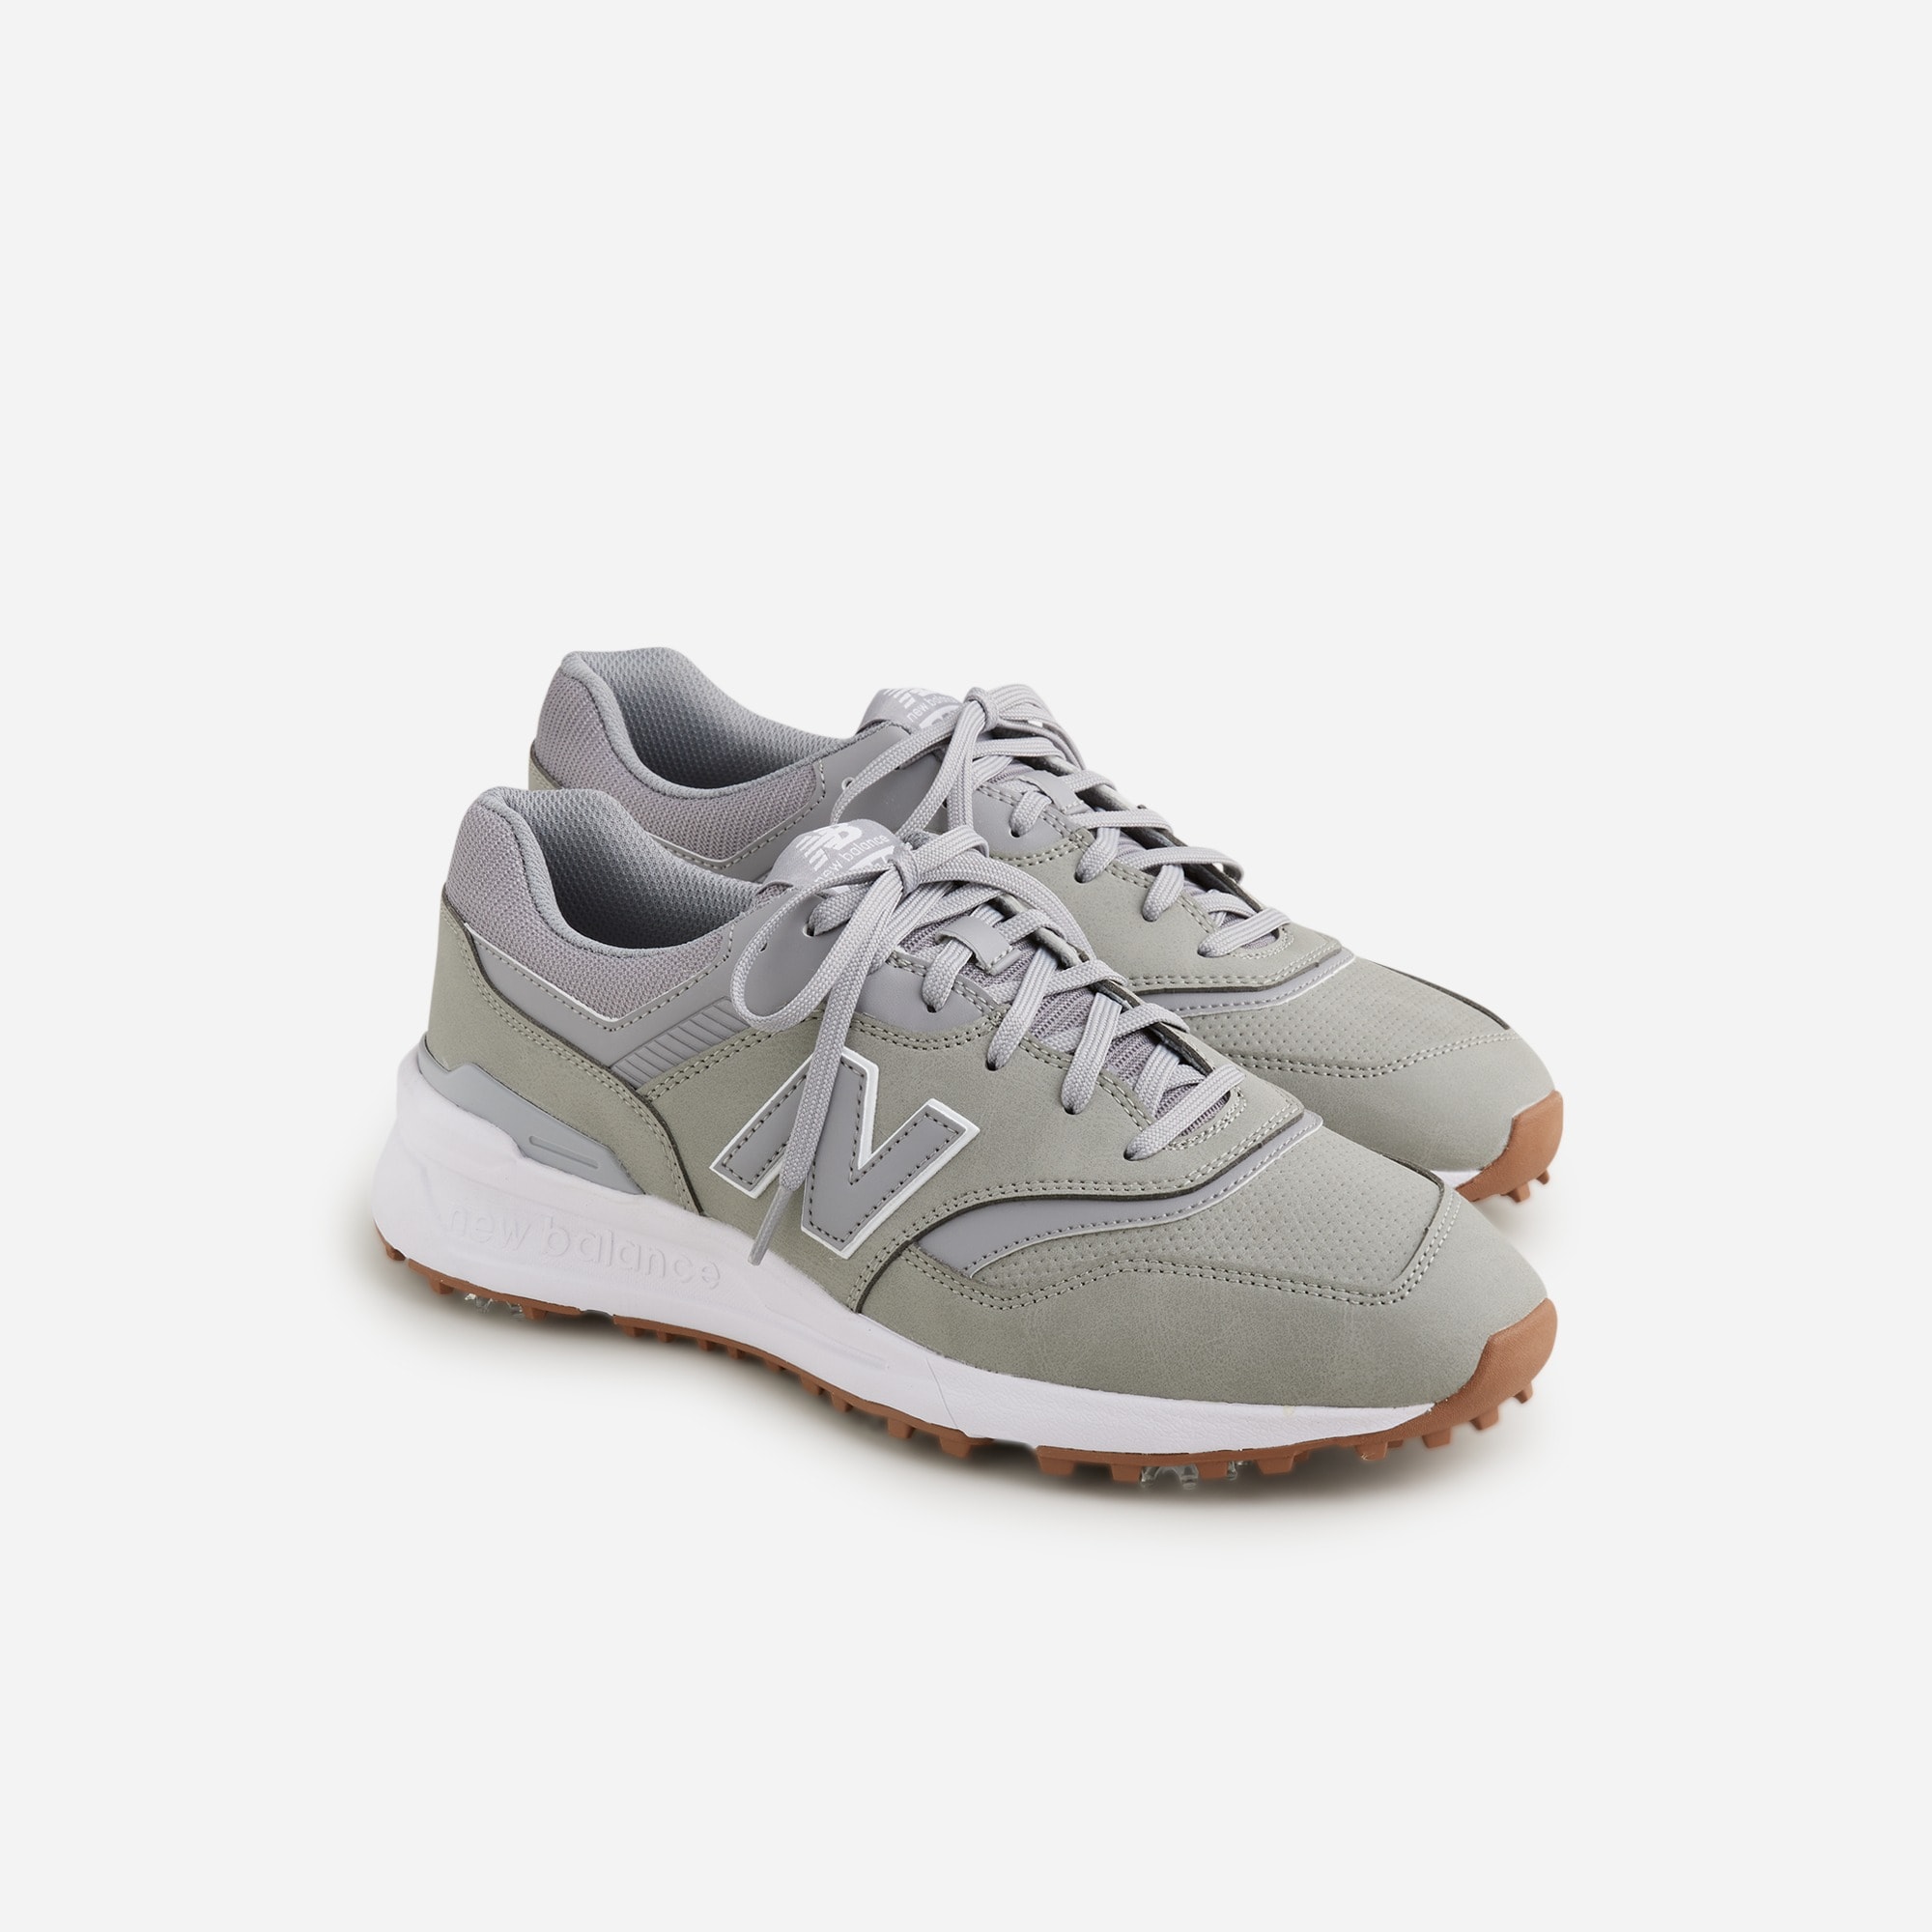  New Balance&reg; 997G golf shoes